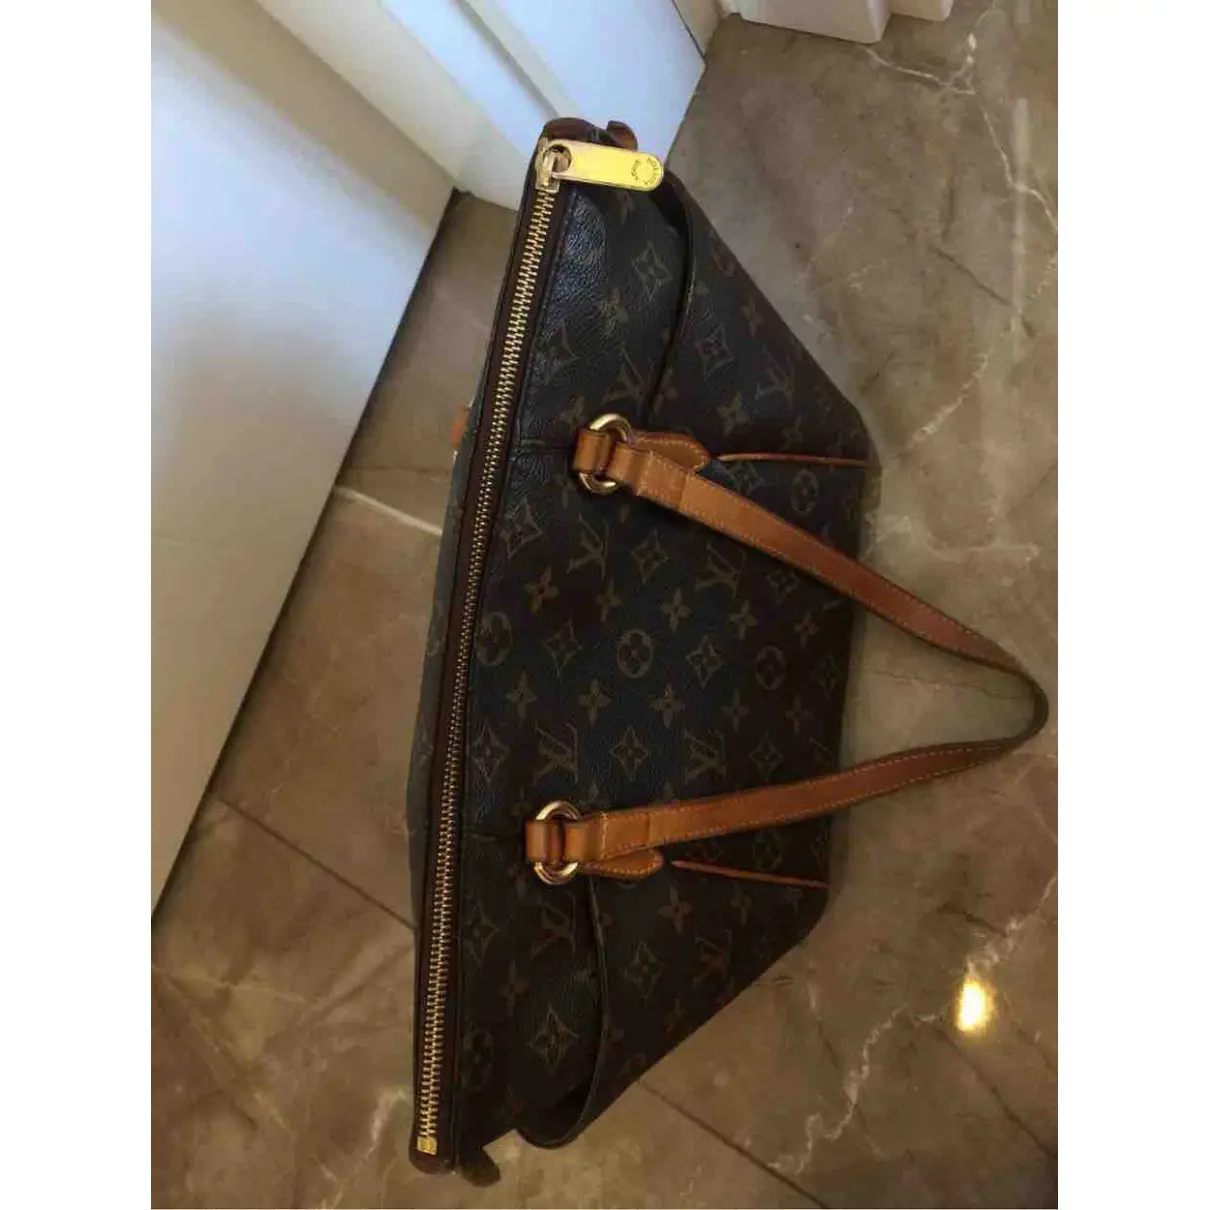 Buy Louis Vuitton Totally cloth handbag online